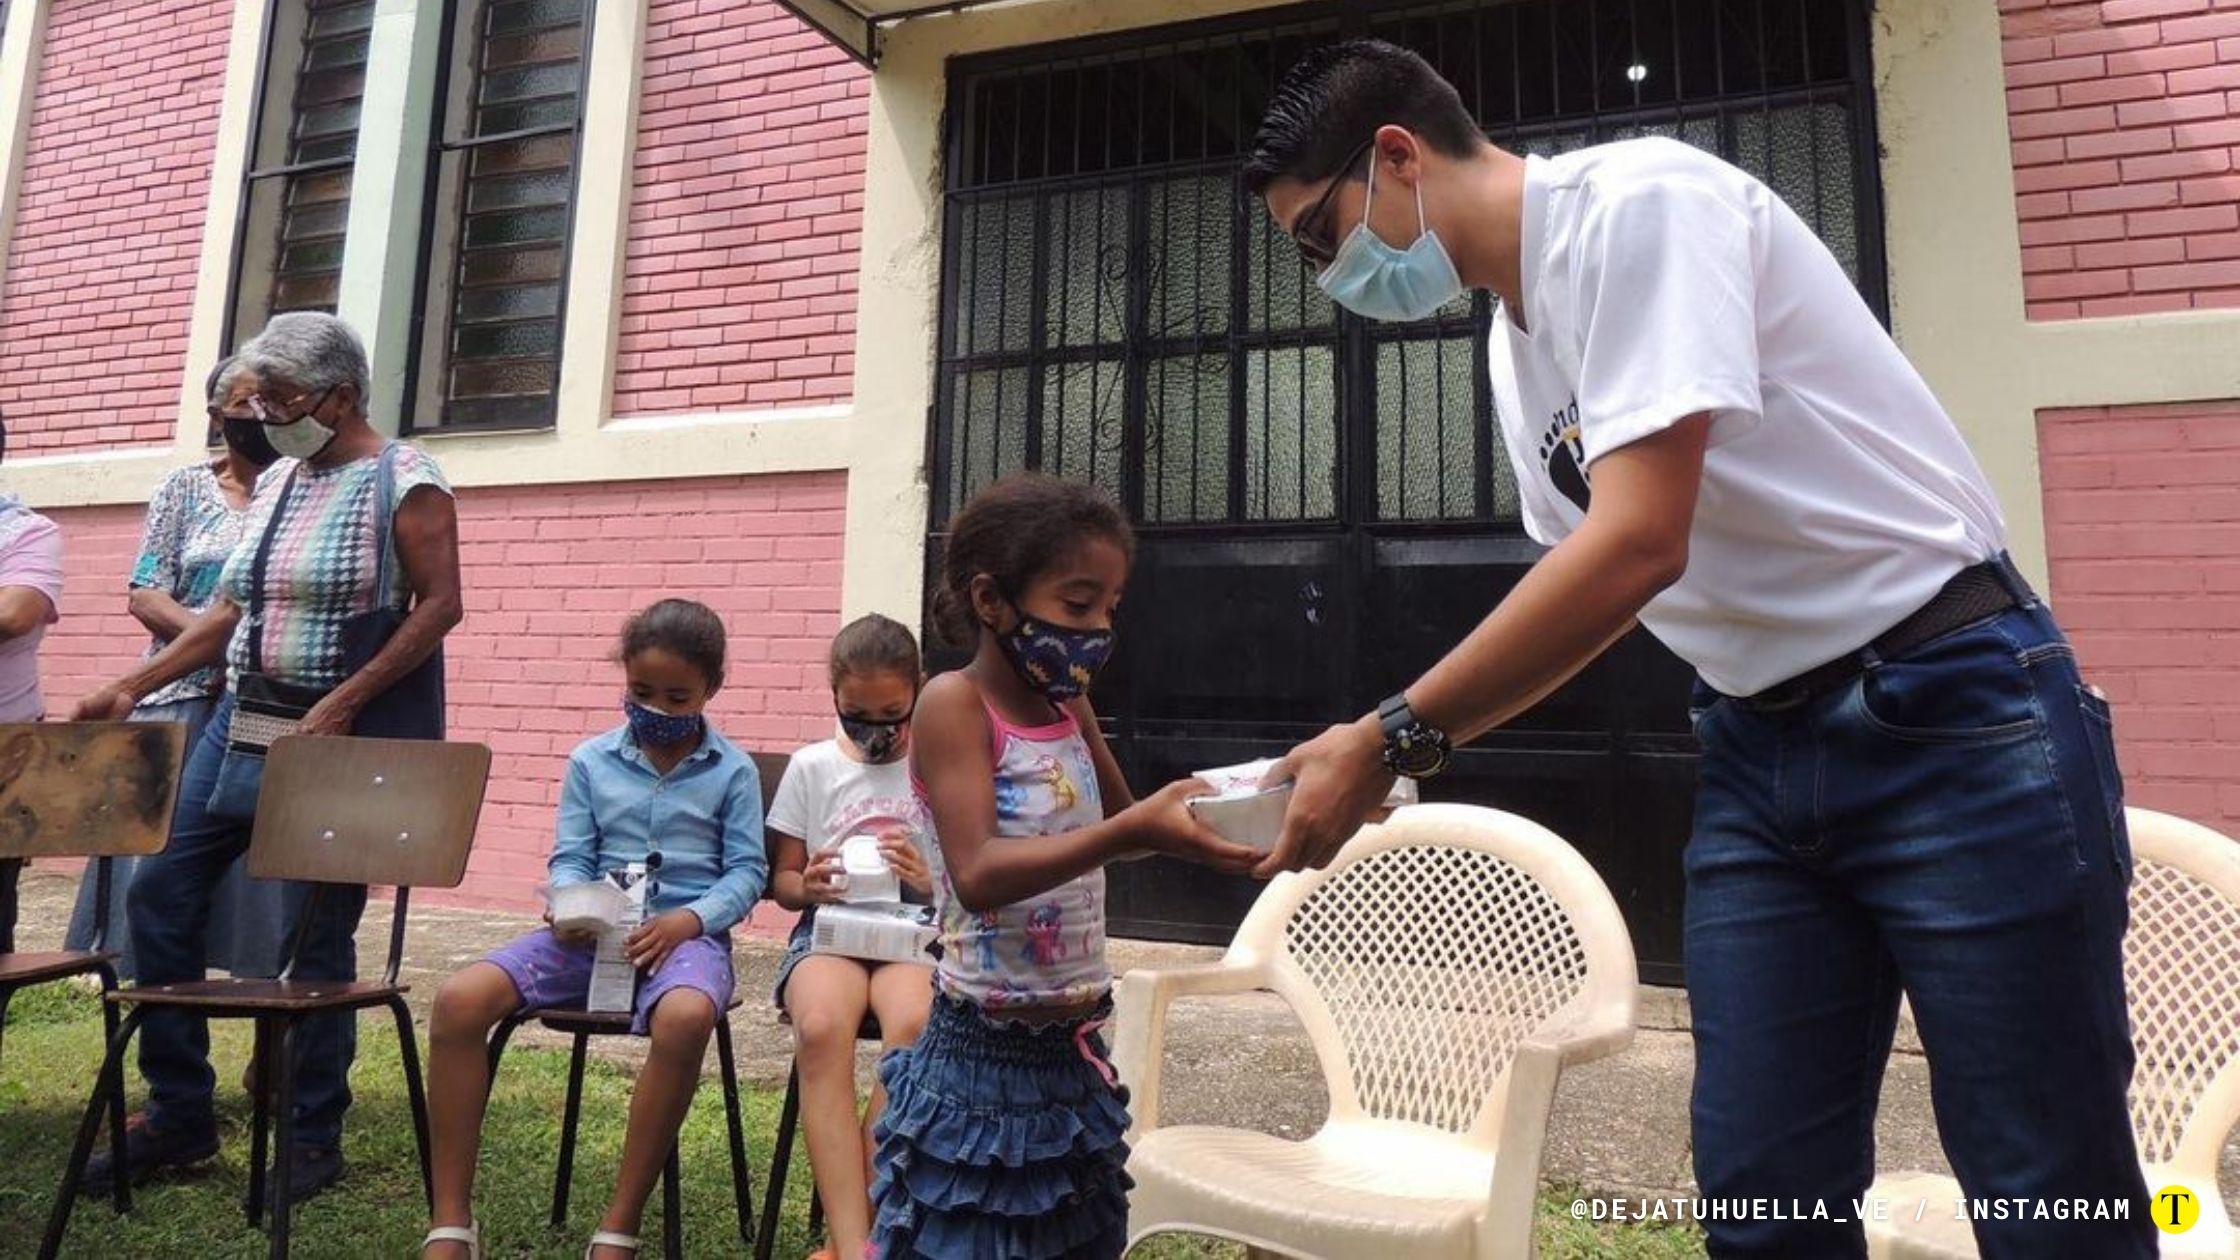 La fundación "Deja tu huella" realiza actividades solidarias para llevar alegría a los lugares más vulnerables de la ciudad de Valencia. Foto: @dejatuhuella_ve / Instagram